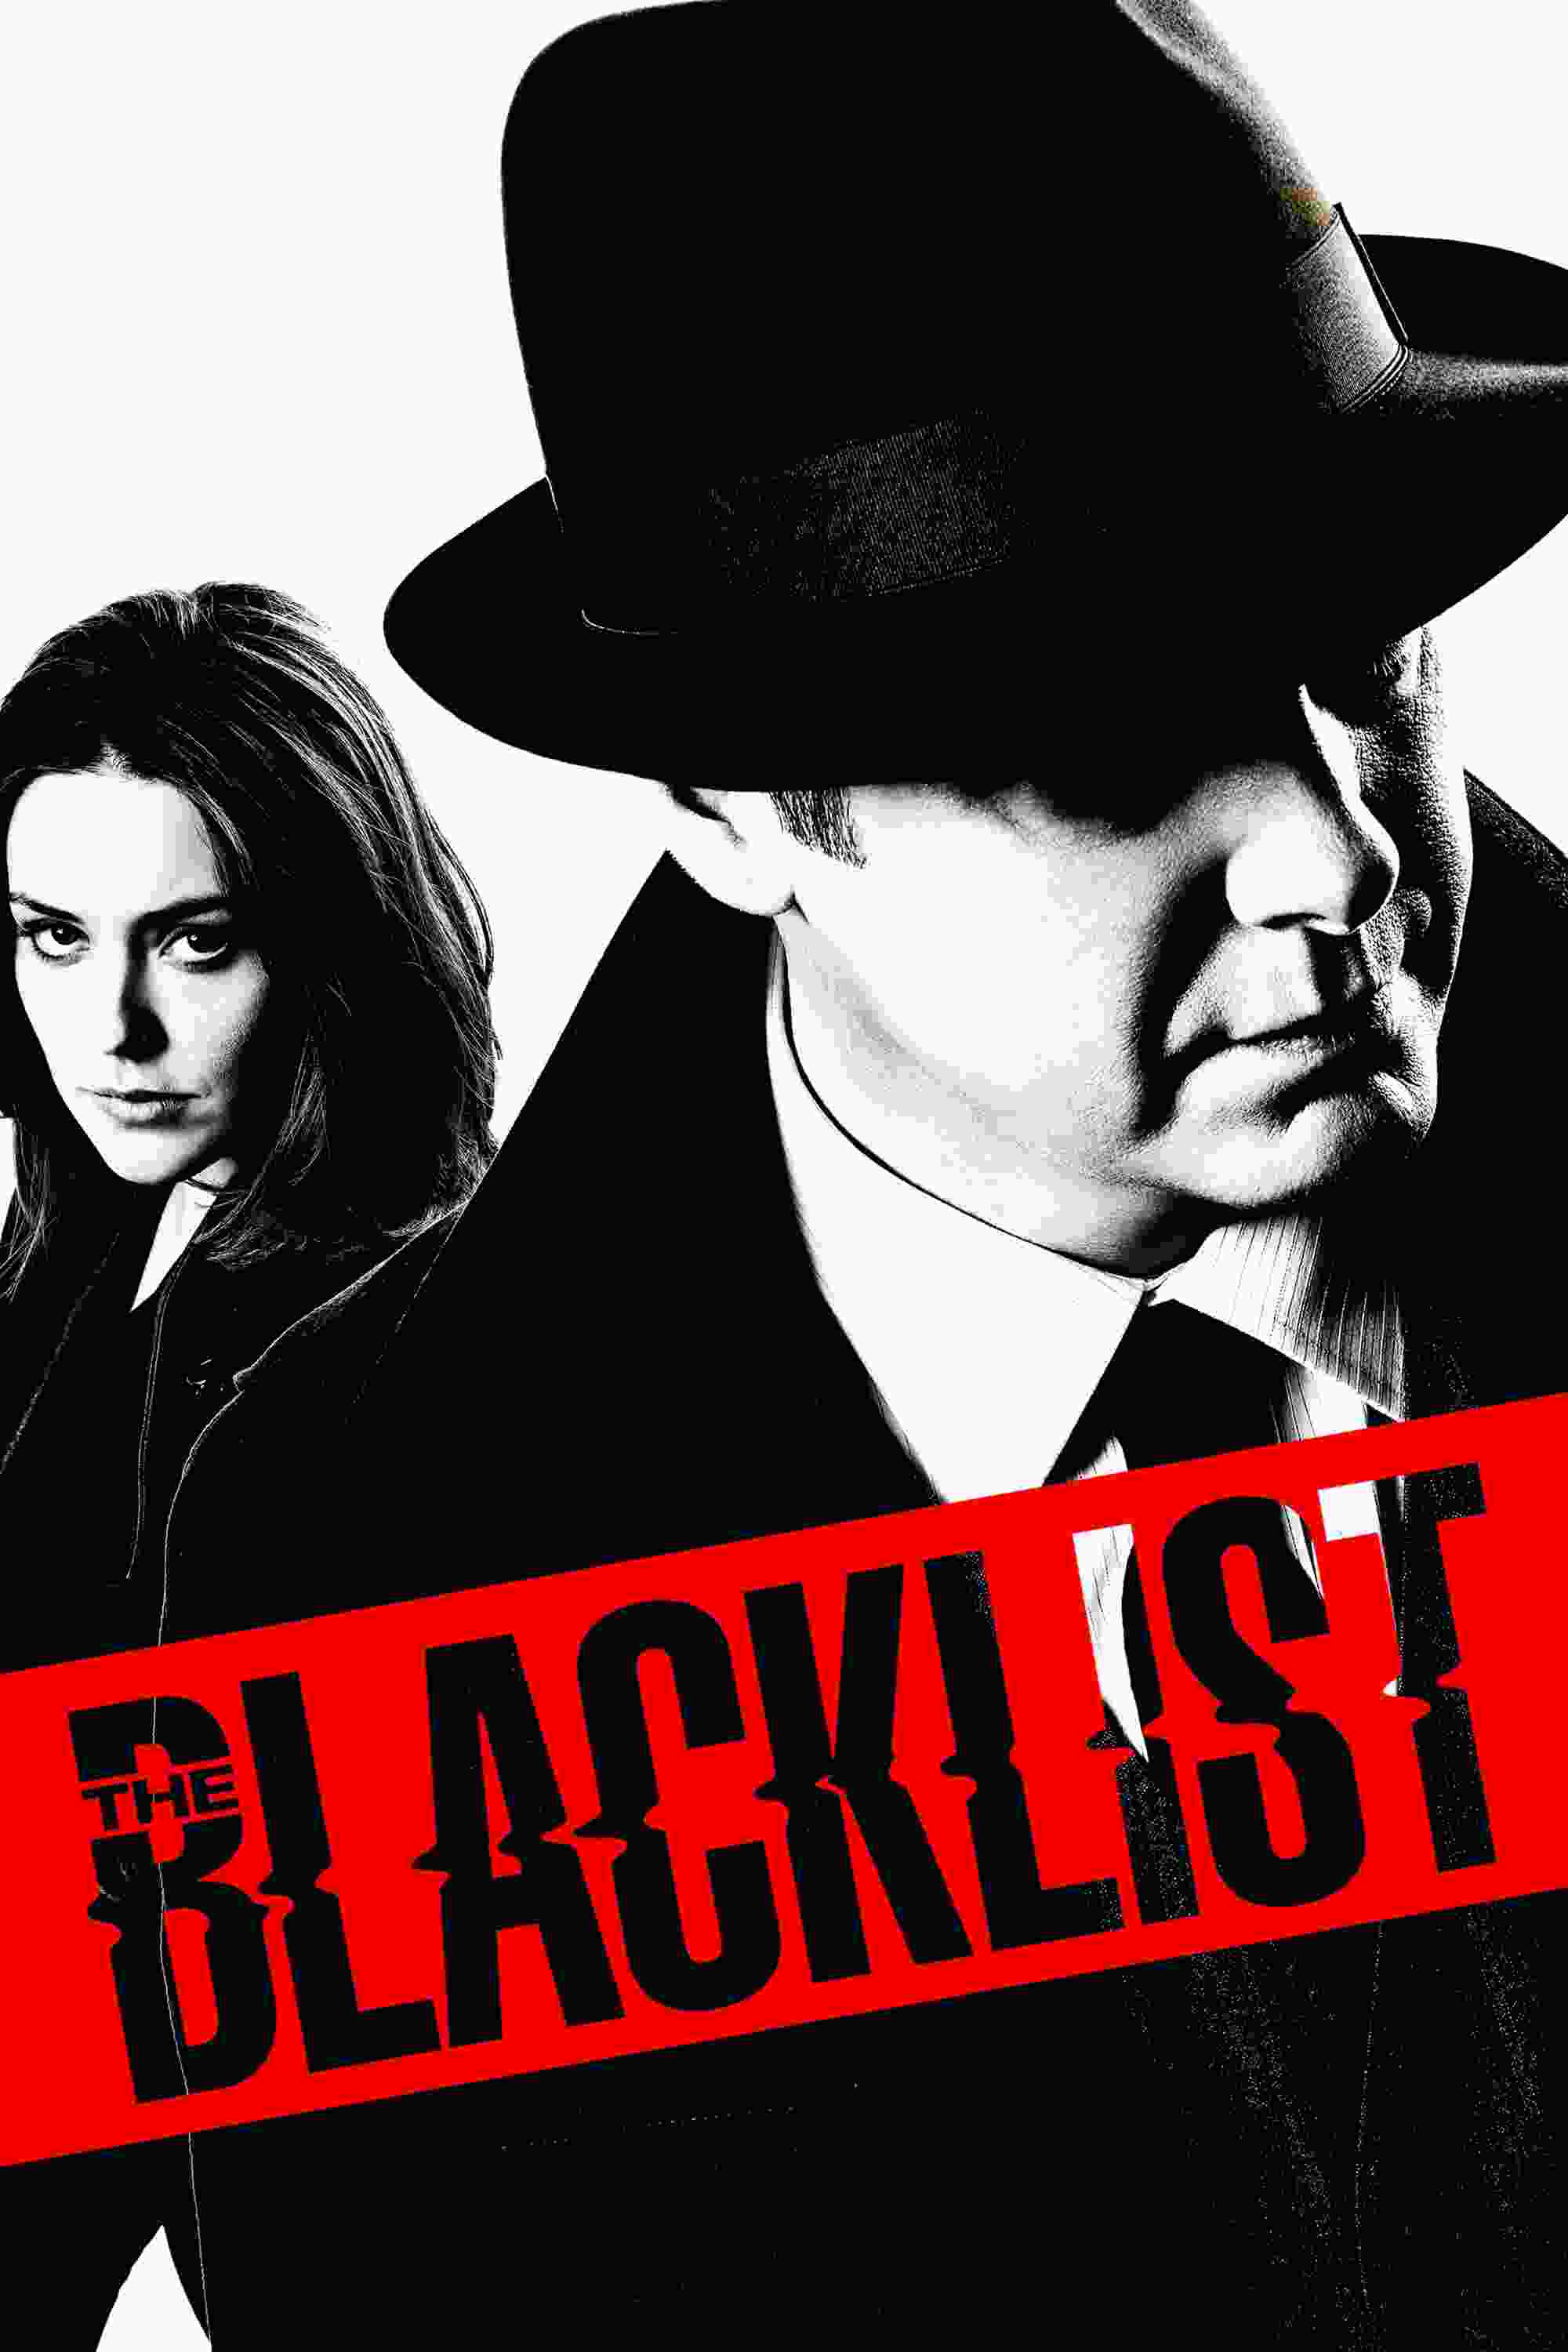 The Blacklist (TV Series 2013– ) vj Junior James Spader